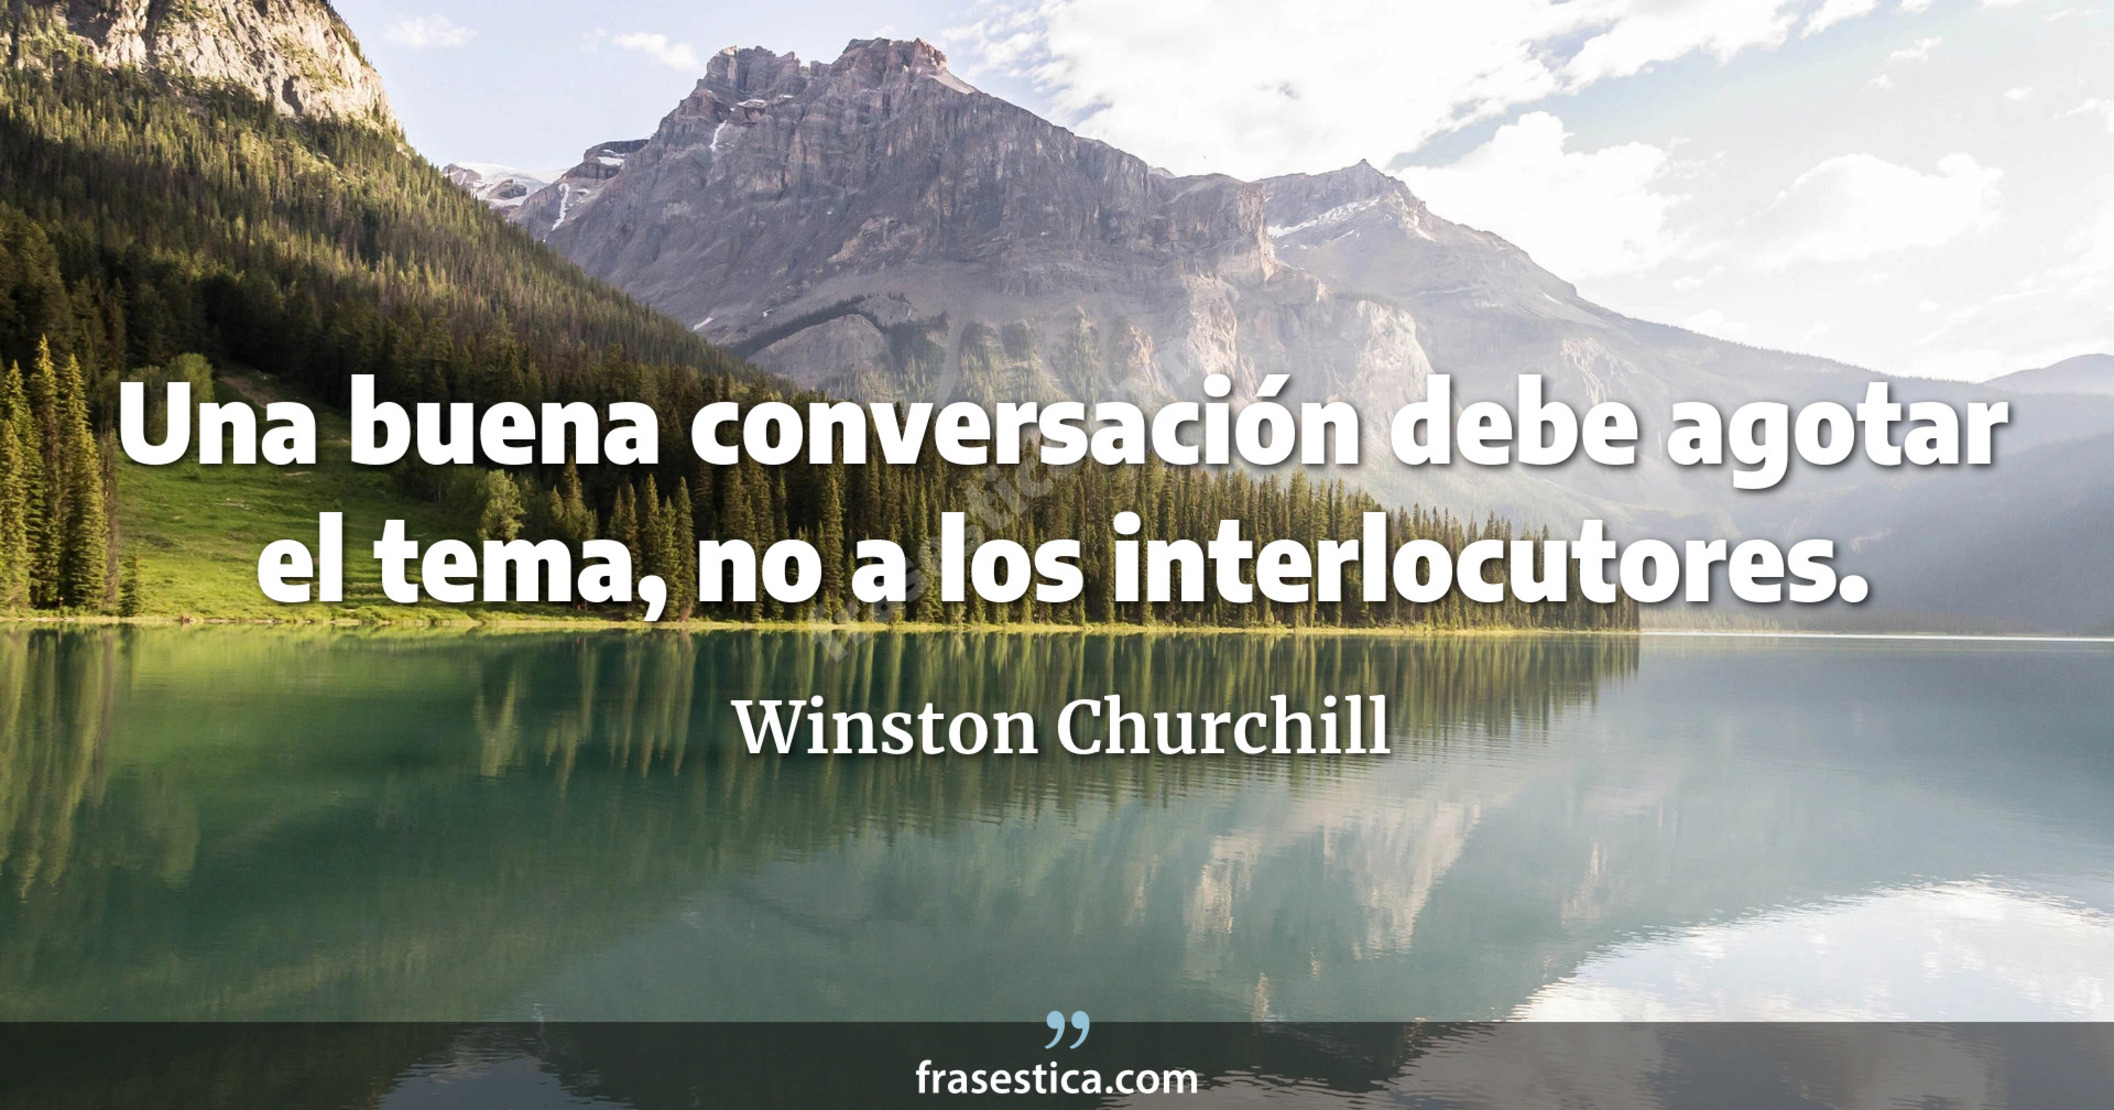 Una buena conversación debe agotar el tema, no a los interlocutores. - Winston Churchill